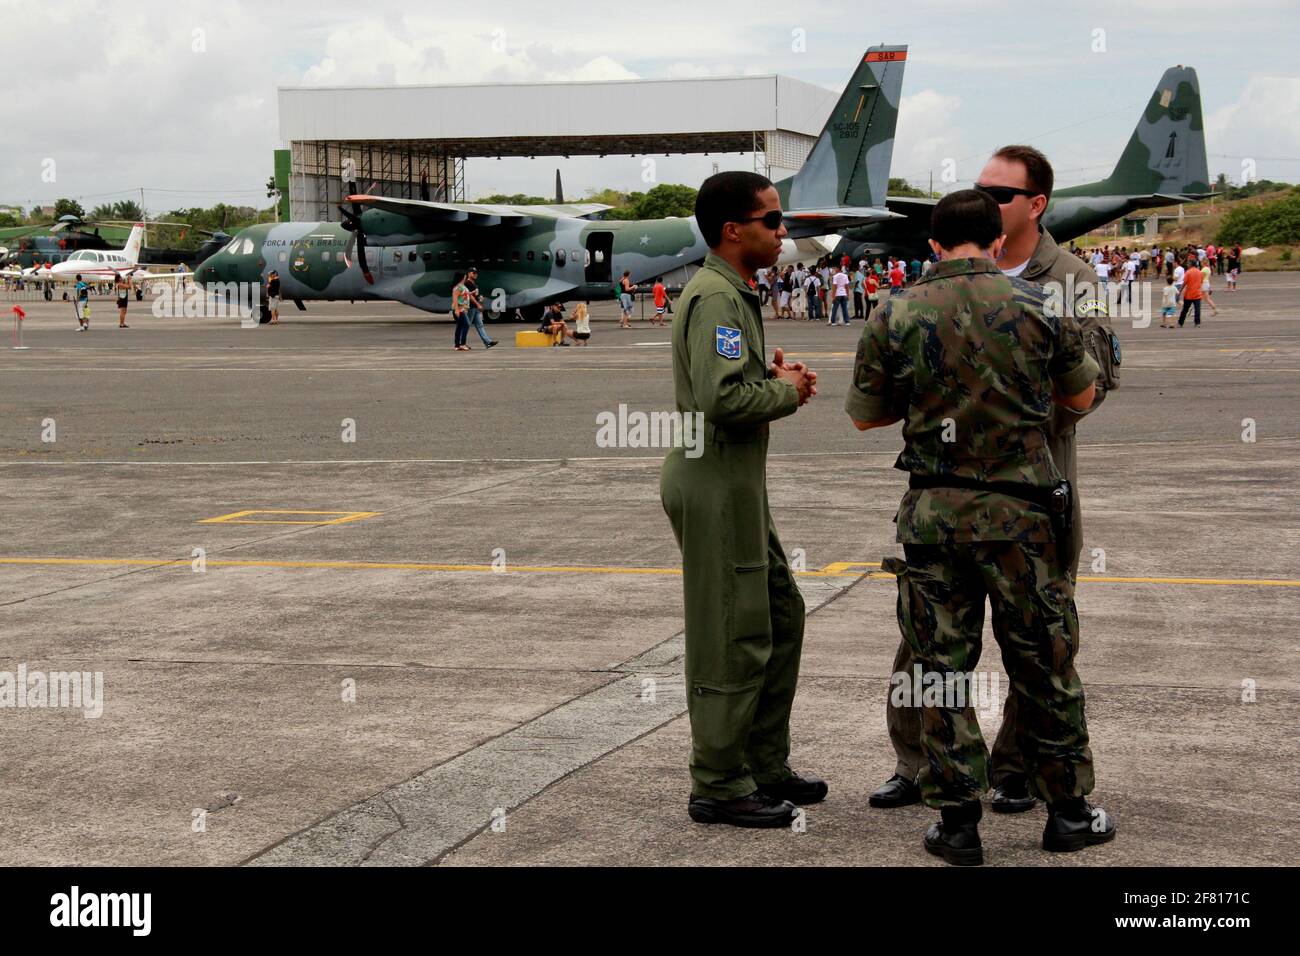 salvador, bahia / brazil - november 10, 2012: Hercules aircraft from Força Aerea Brasileira is seen at the Base Aerea de Salvador. *** Local Caption * Stock Photo